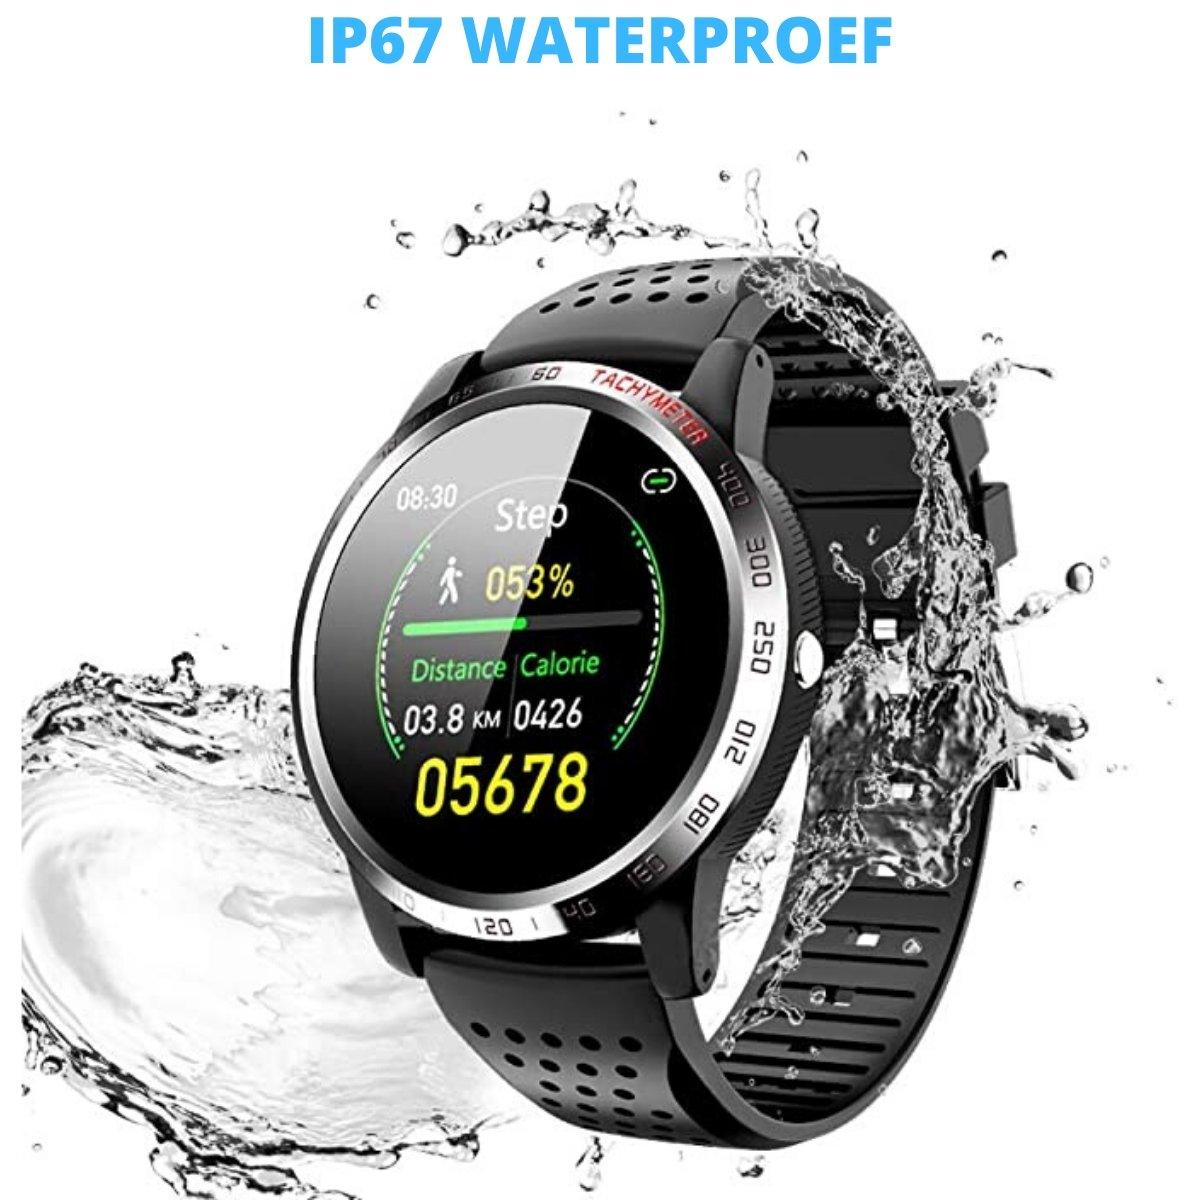 Waterproof bluetooth smart watch KingsPower – realkingspower